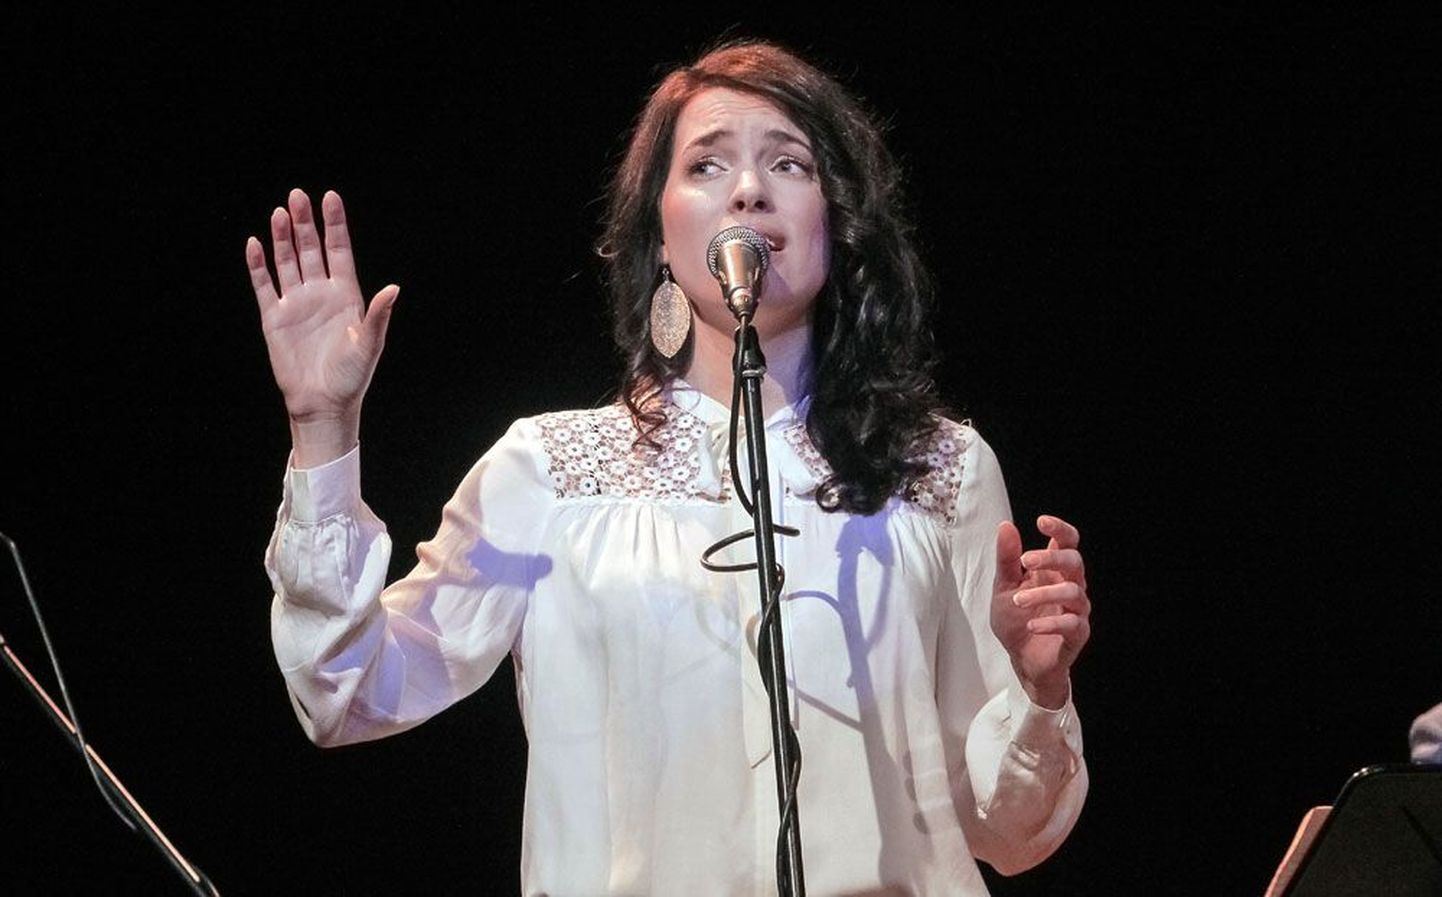 Популярная эстонская певица Лийзи Койксон — одна из участниц бесплатного концерта «У истоков ритма», который пройдет 7 июля в Силламяэ.